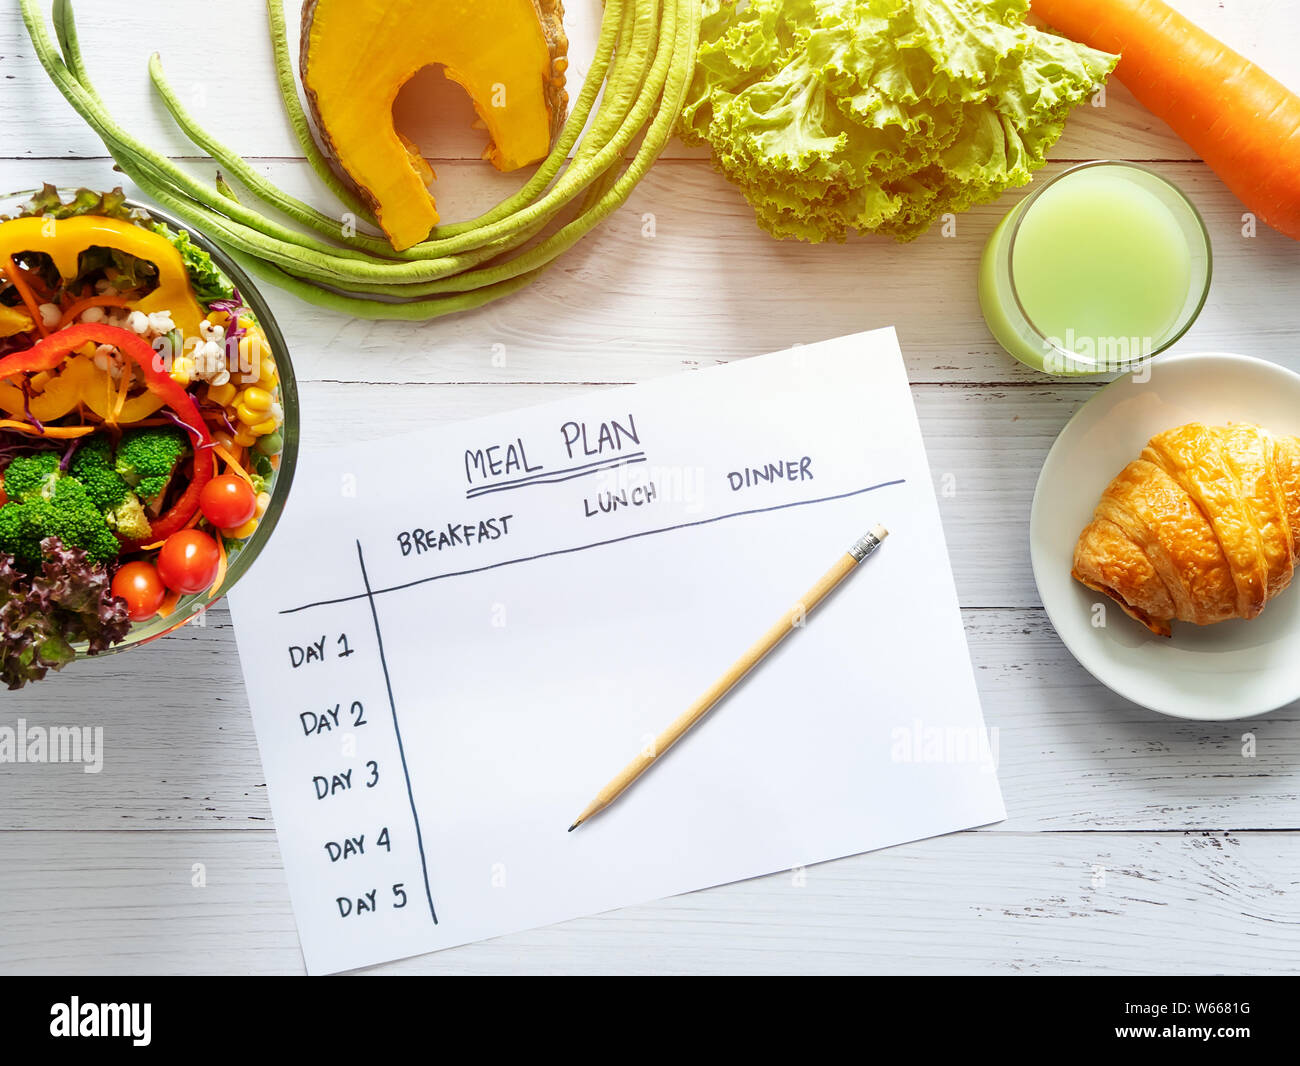 Le contrôle des calories, repas, régime alimentaire et perte de poids concept. Vue de dessus de table repas sur papier avec salade, jus de fruits, pain et légumes Banque D'Images